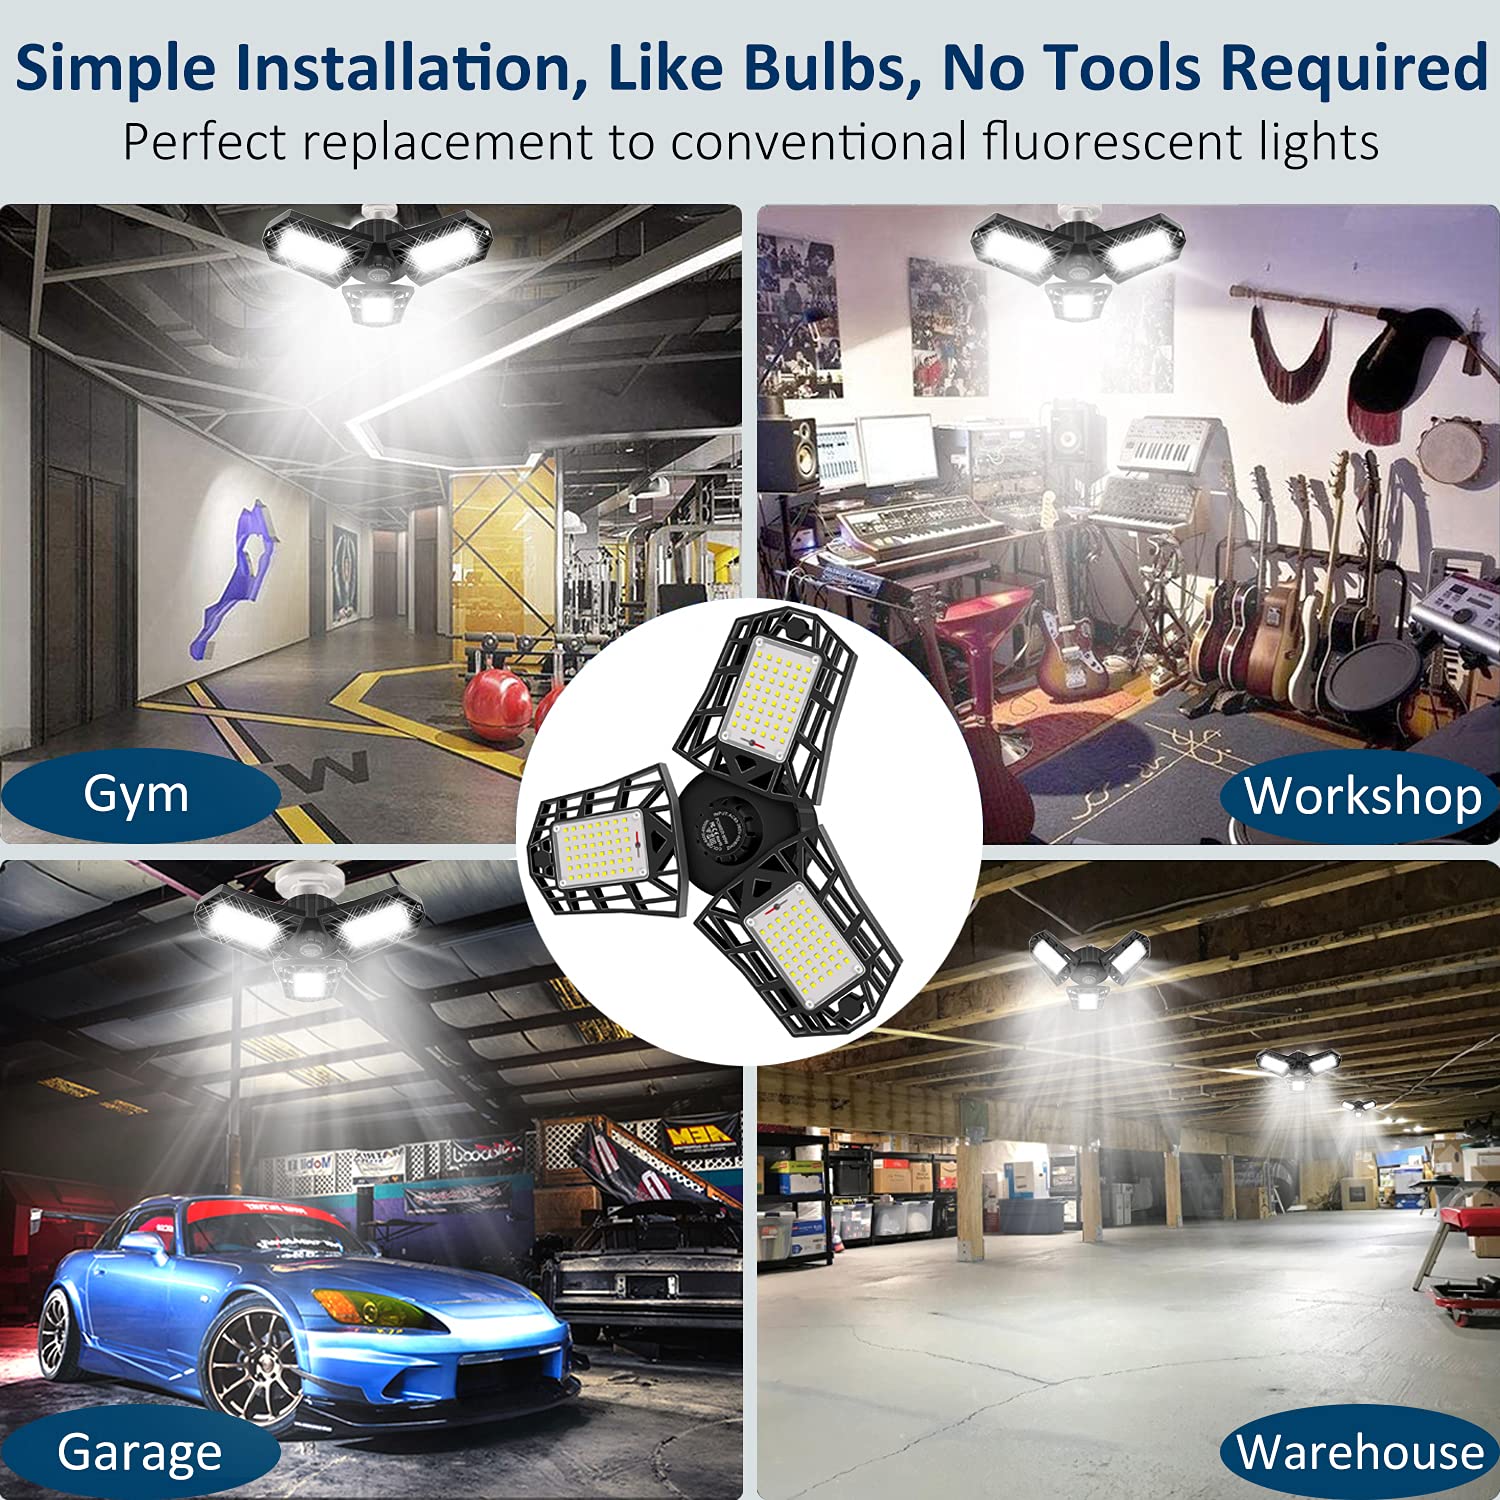 GHUSTAR 2-Pack LED Garage Light 60W Garage Lighting - 6000LM 6500K LED Deformable Garage Ceiling Lights, LED Shop Light with Adjustable Multi-Position Panels, LED Glow Light for Garage, Workshop